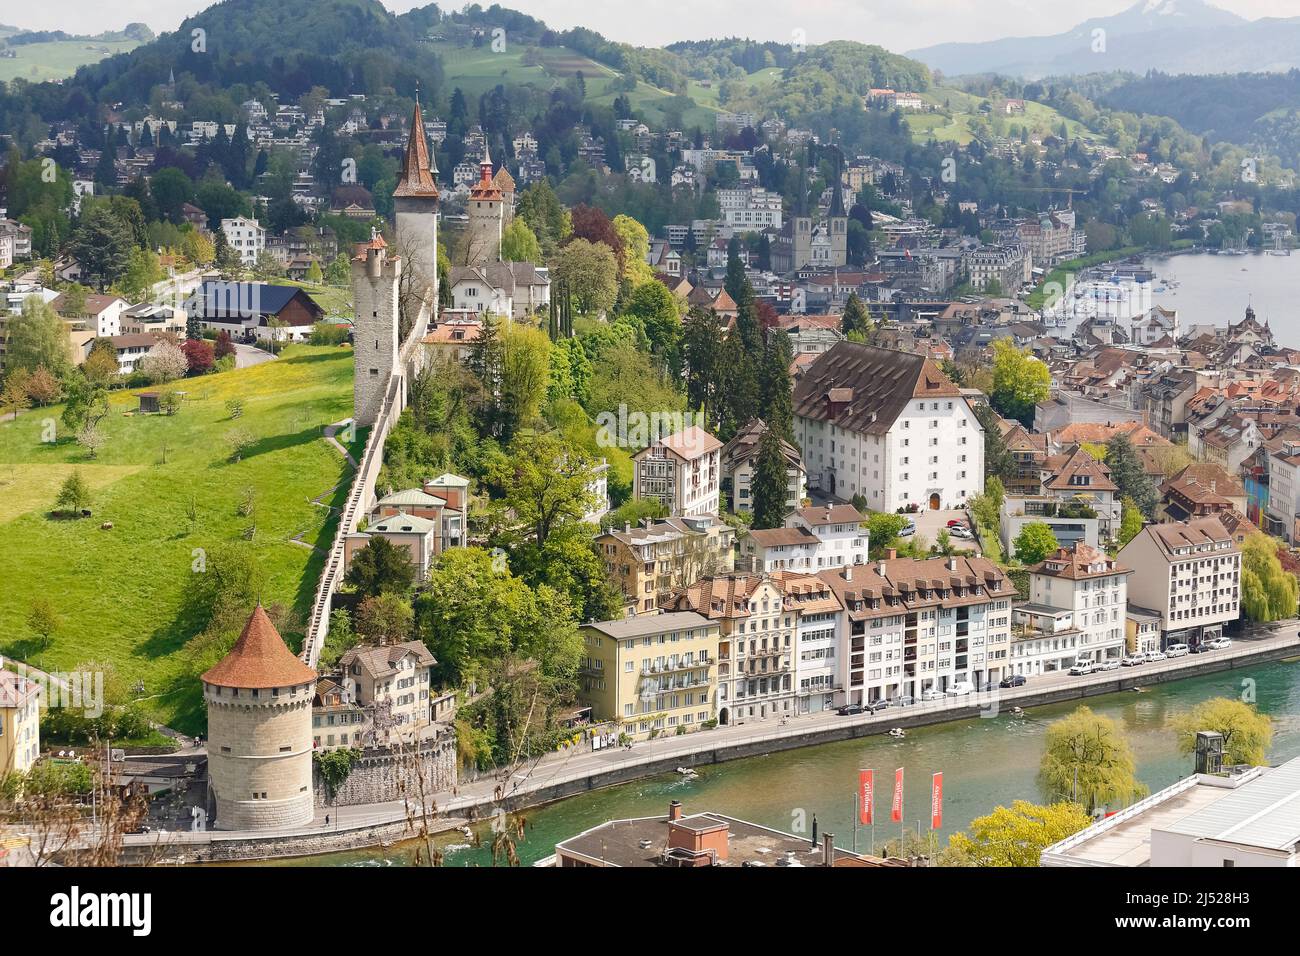 Lucerna, Suiza - 04 de mayo de 2016: Las históricas murallas de la ciudad, Museggmauer, junto con las torres visibles, son enteramente las fortificaciones históricas Foto de stock